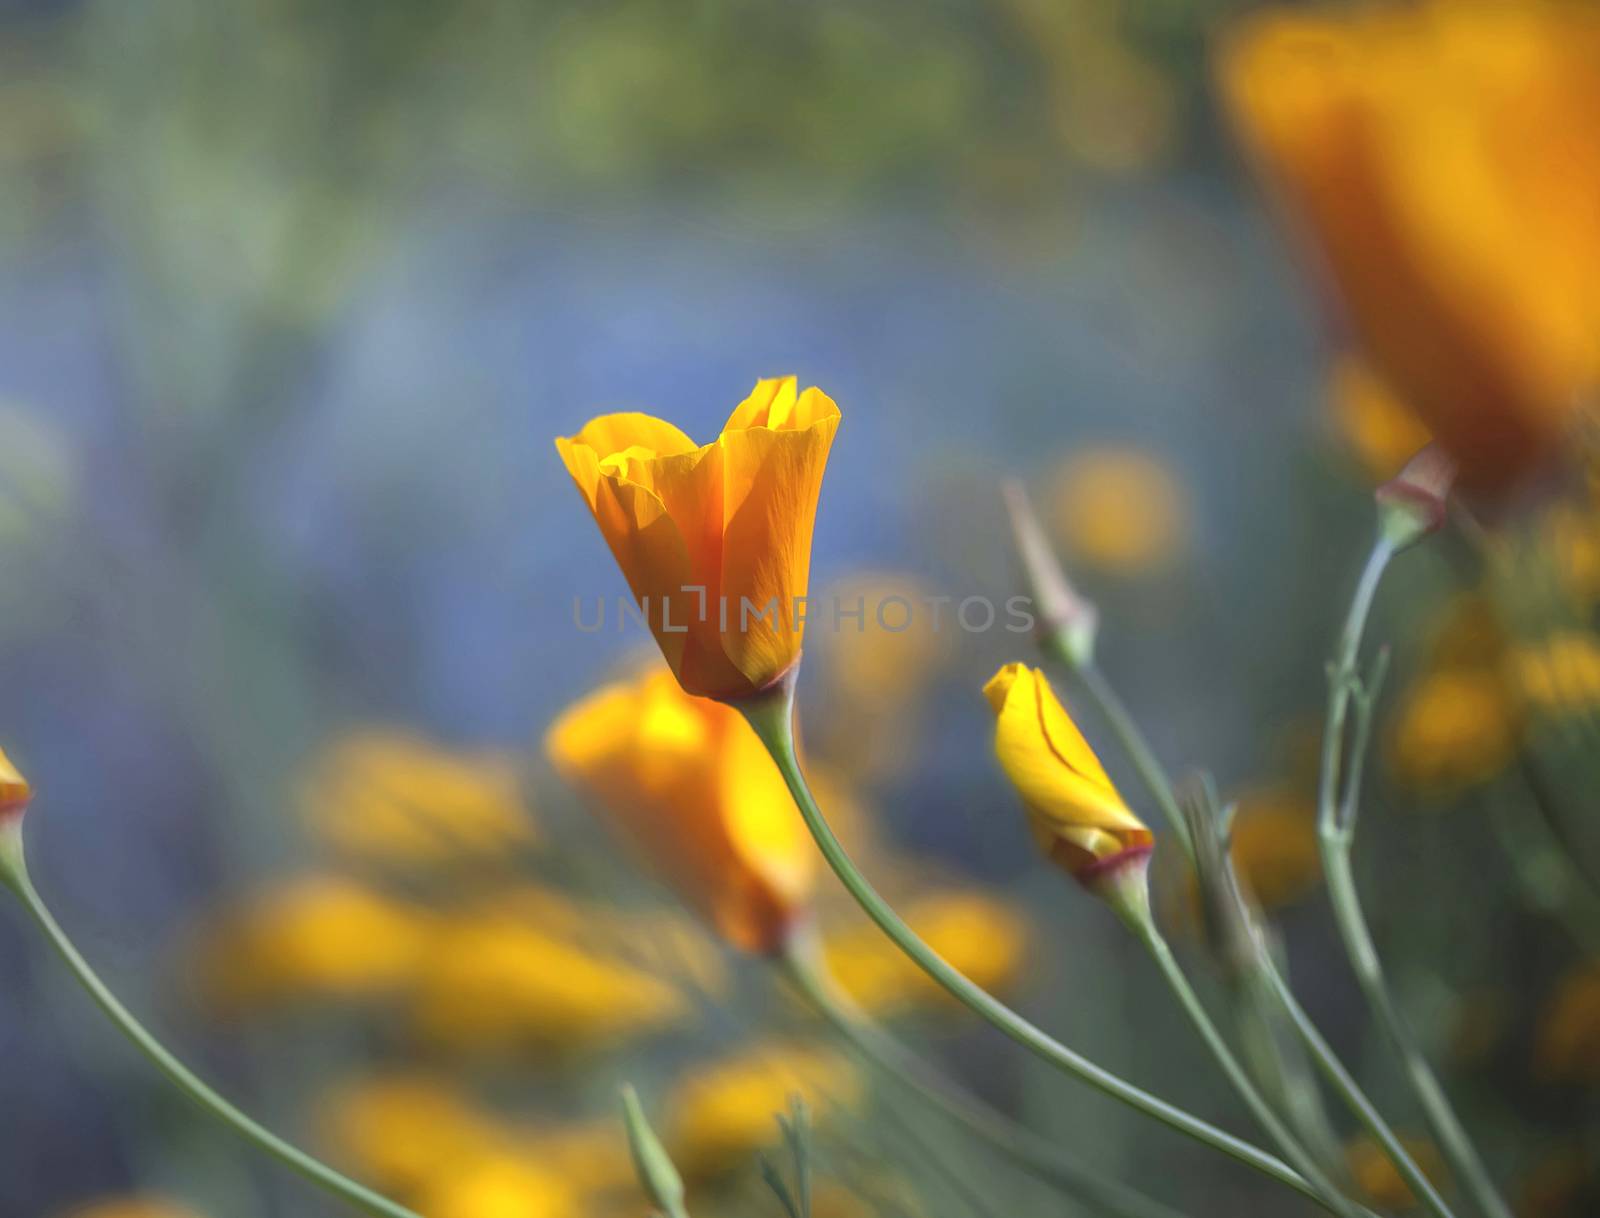 California Poppy, Taken at Uvas Reservoir, Morgan Hill, California